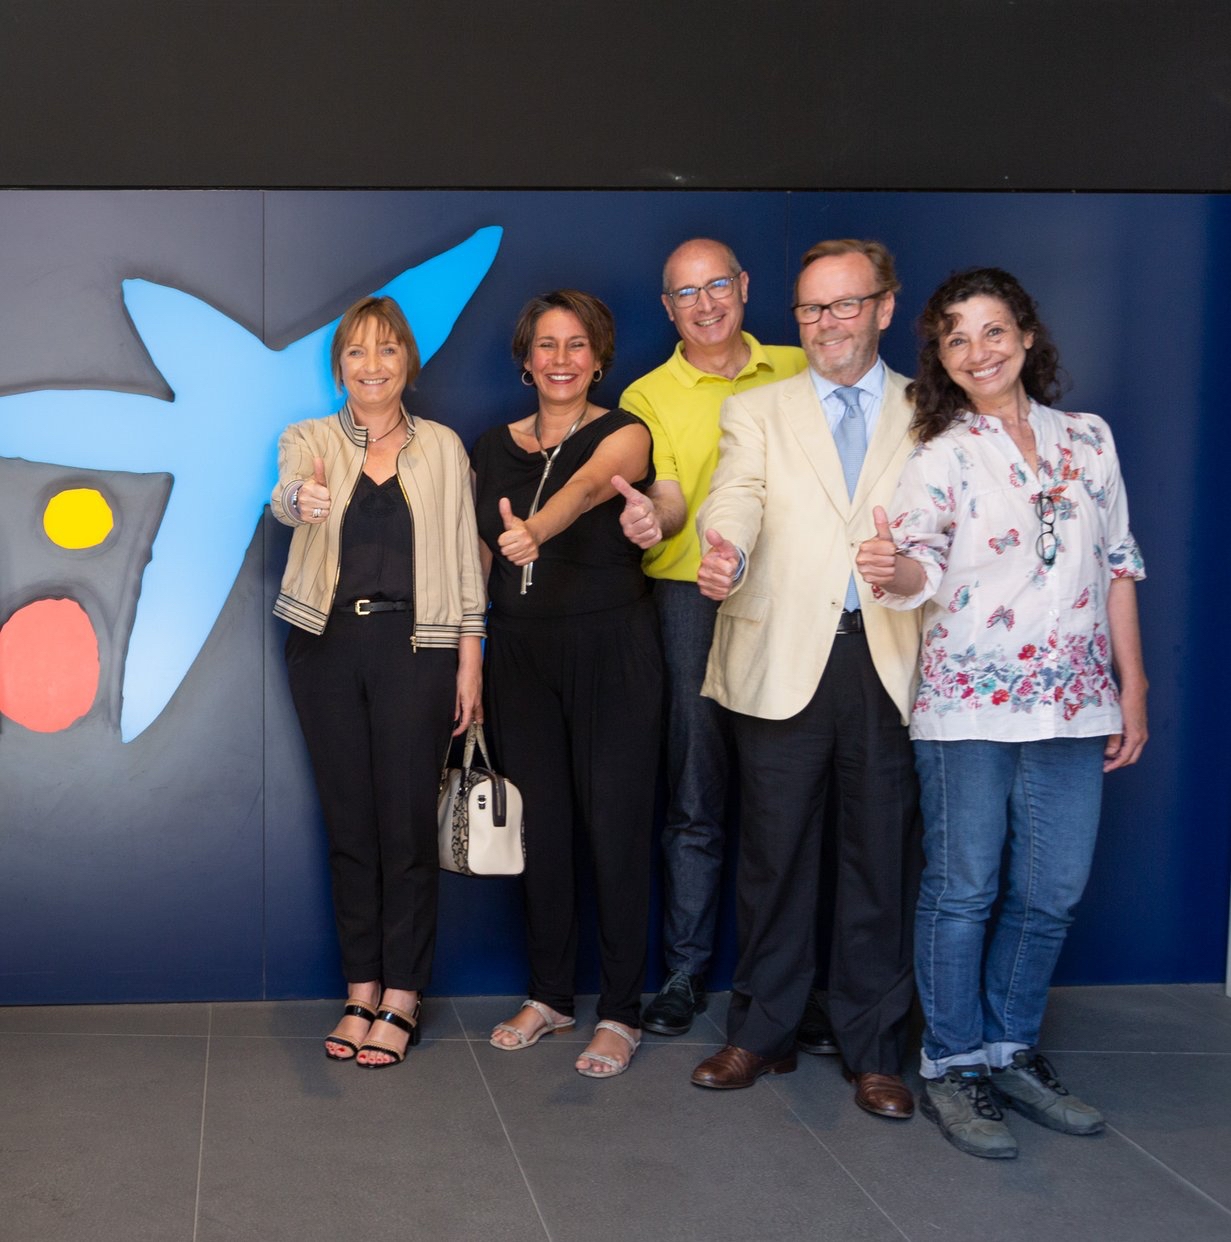 Un proyecto de Danza Mobile entre los 6 seleccionados por ‘La Caixa’ en Sevilla